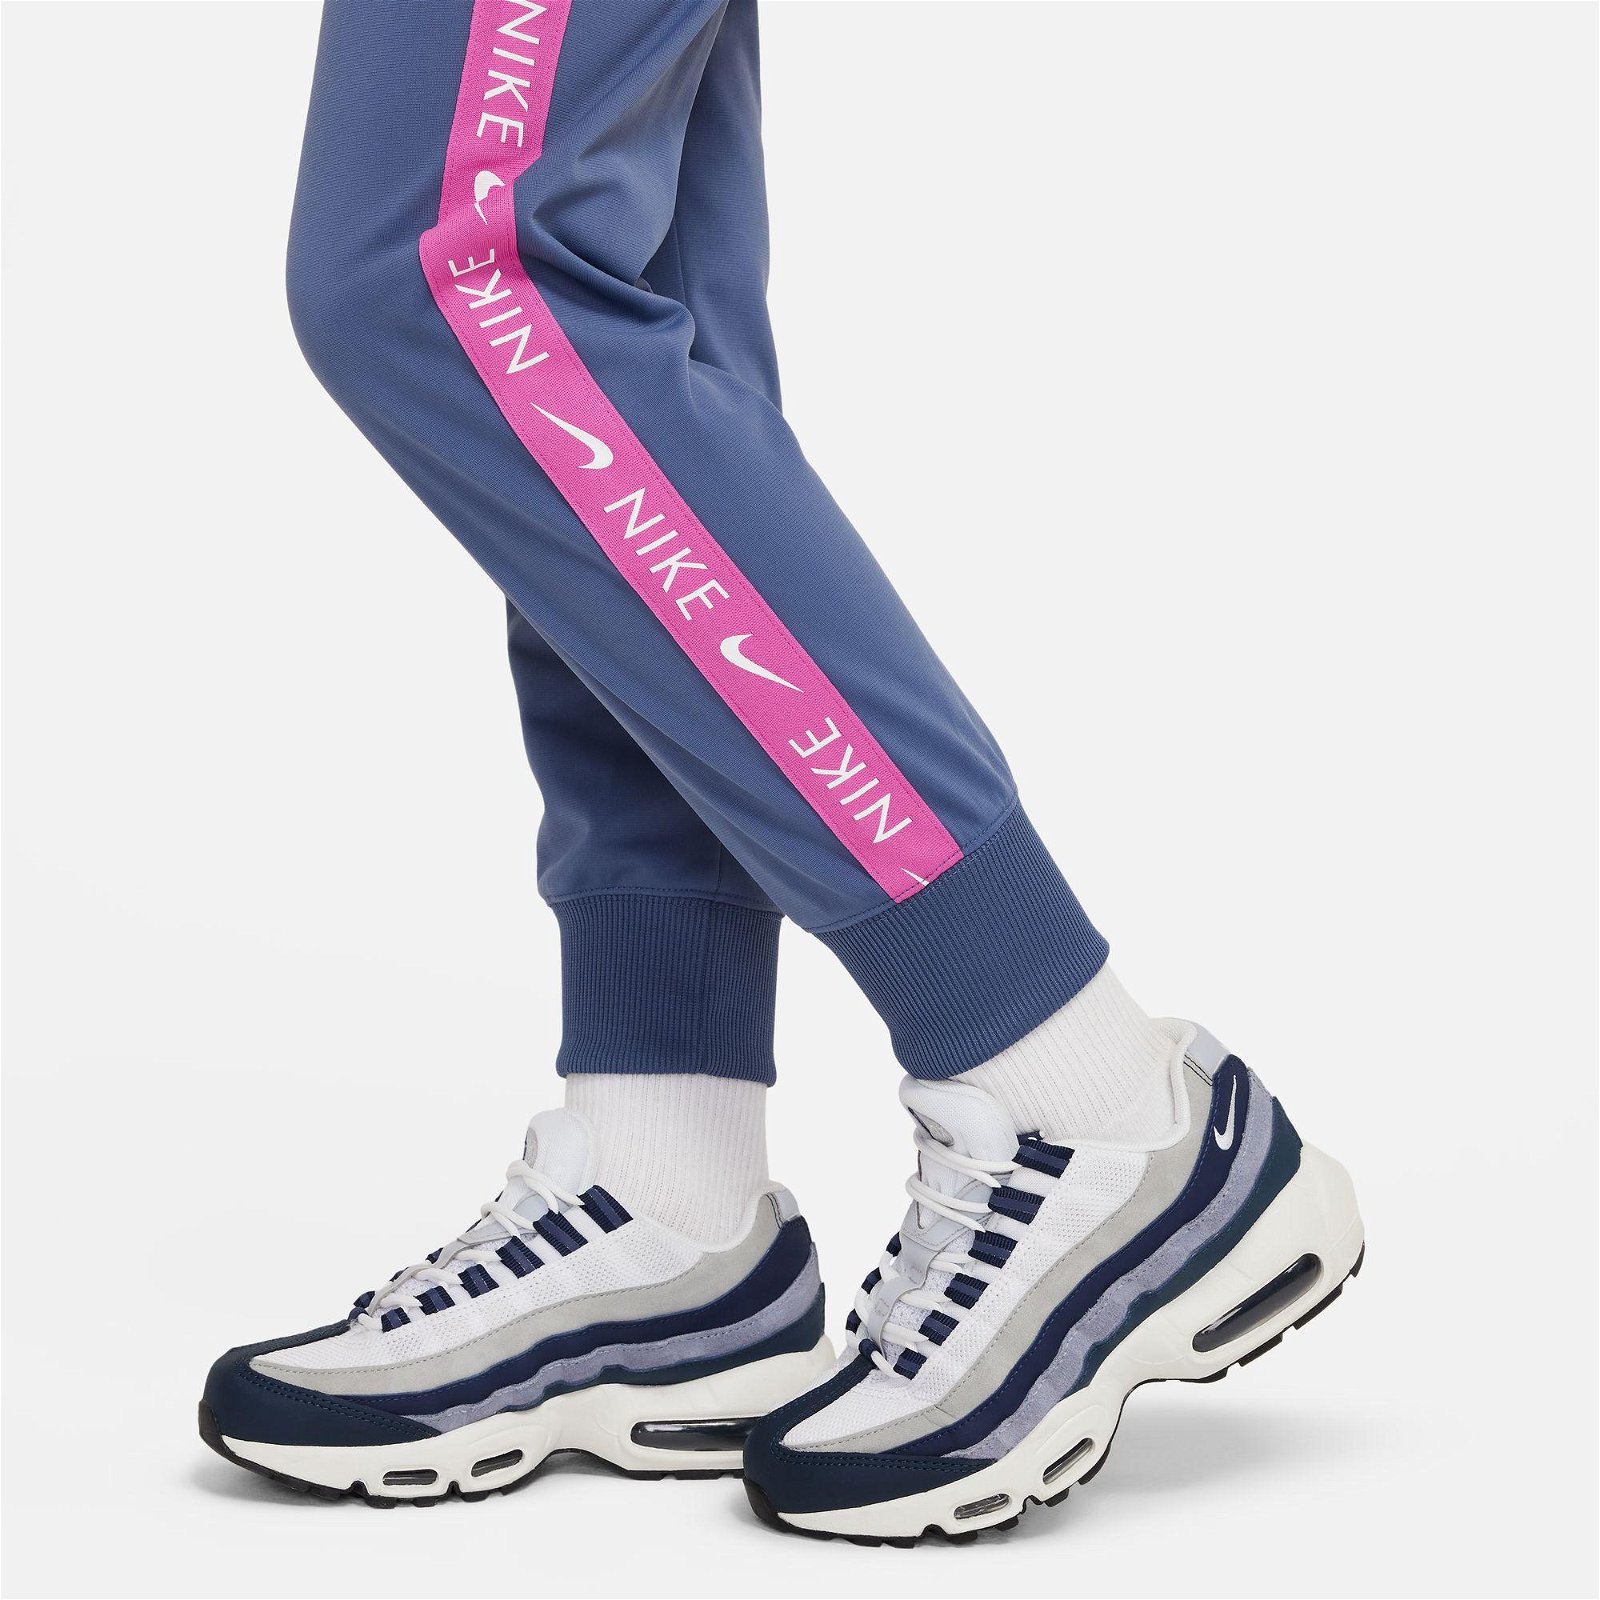 Nike Sportswear Tracksuit Suit Çocuk Mavi Eşofman Takımı